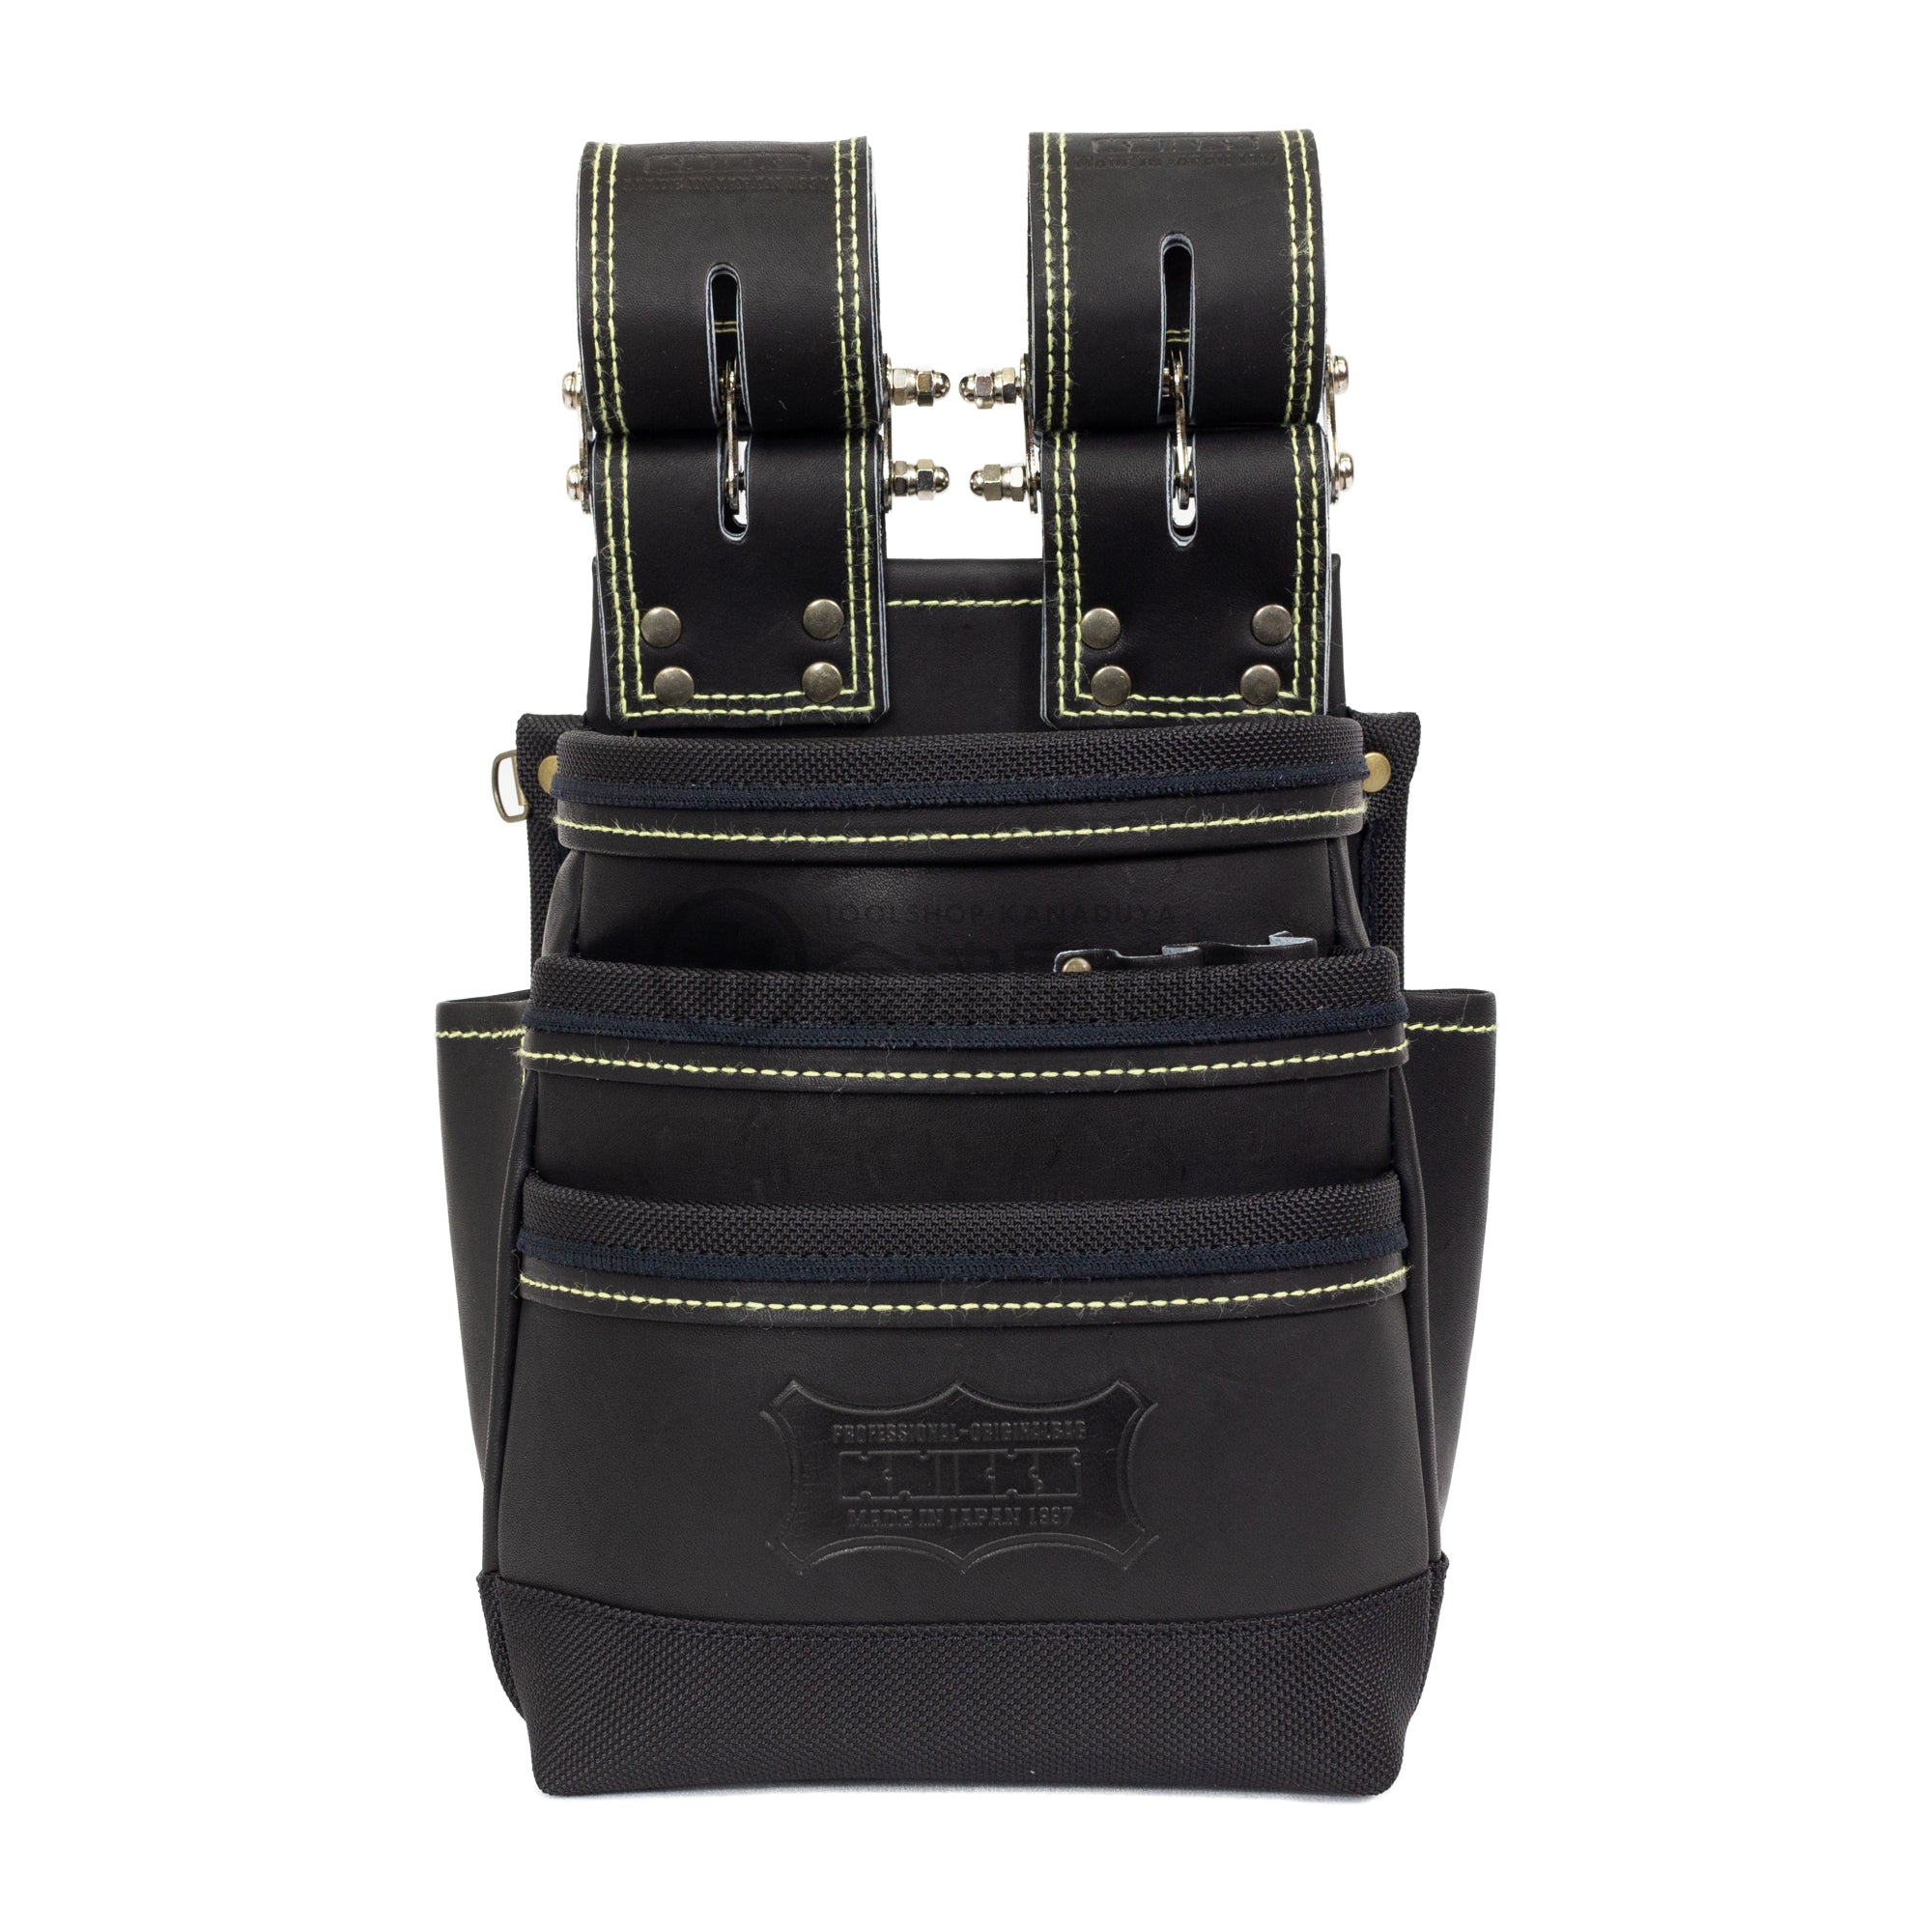 ニックス腰袋 最高級硬式グローブ革チェーンタイプ3段腰袋KGB-301DDX-